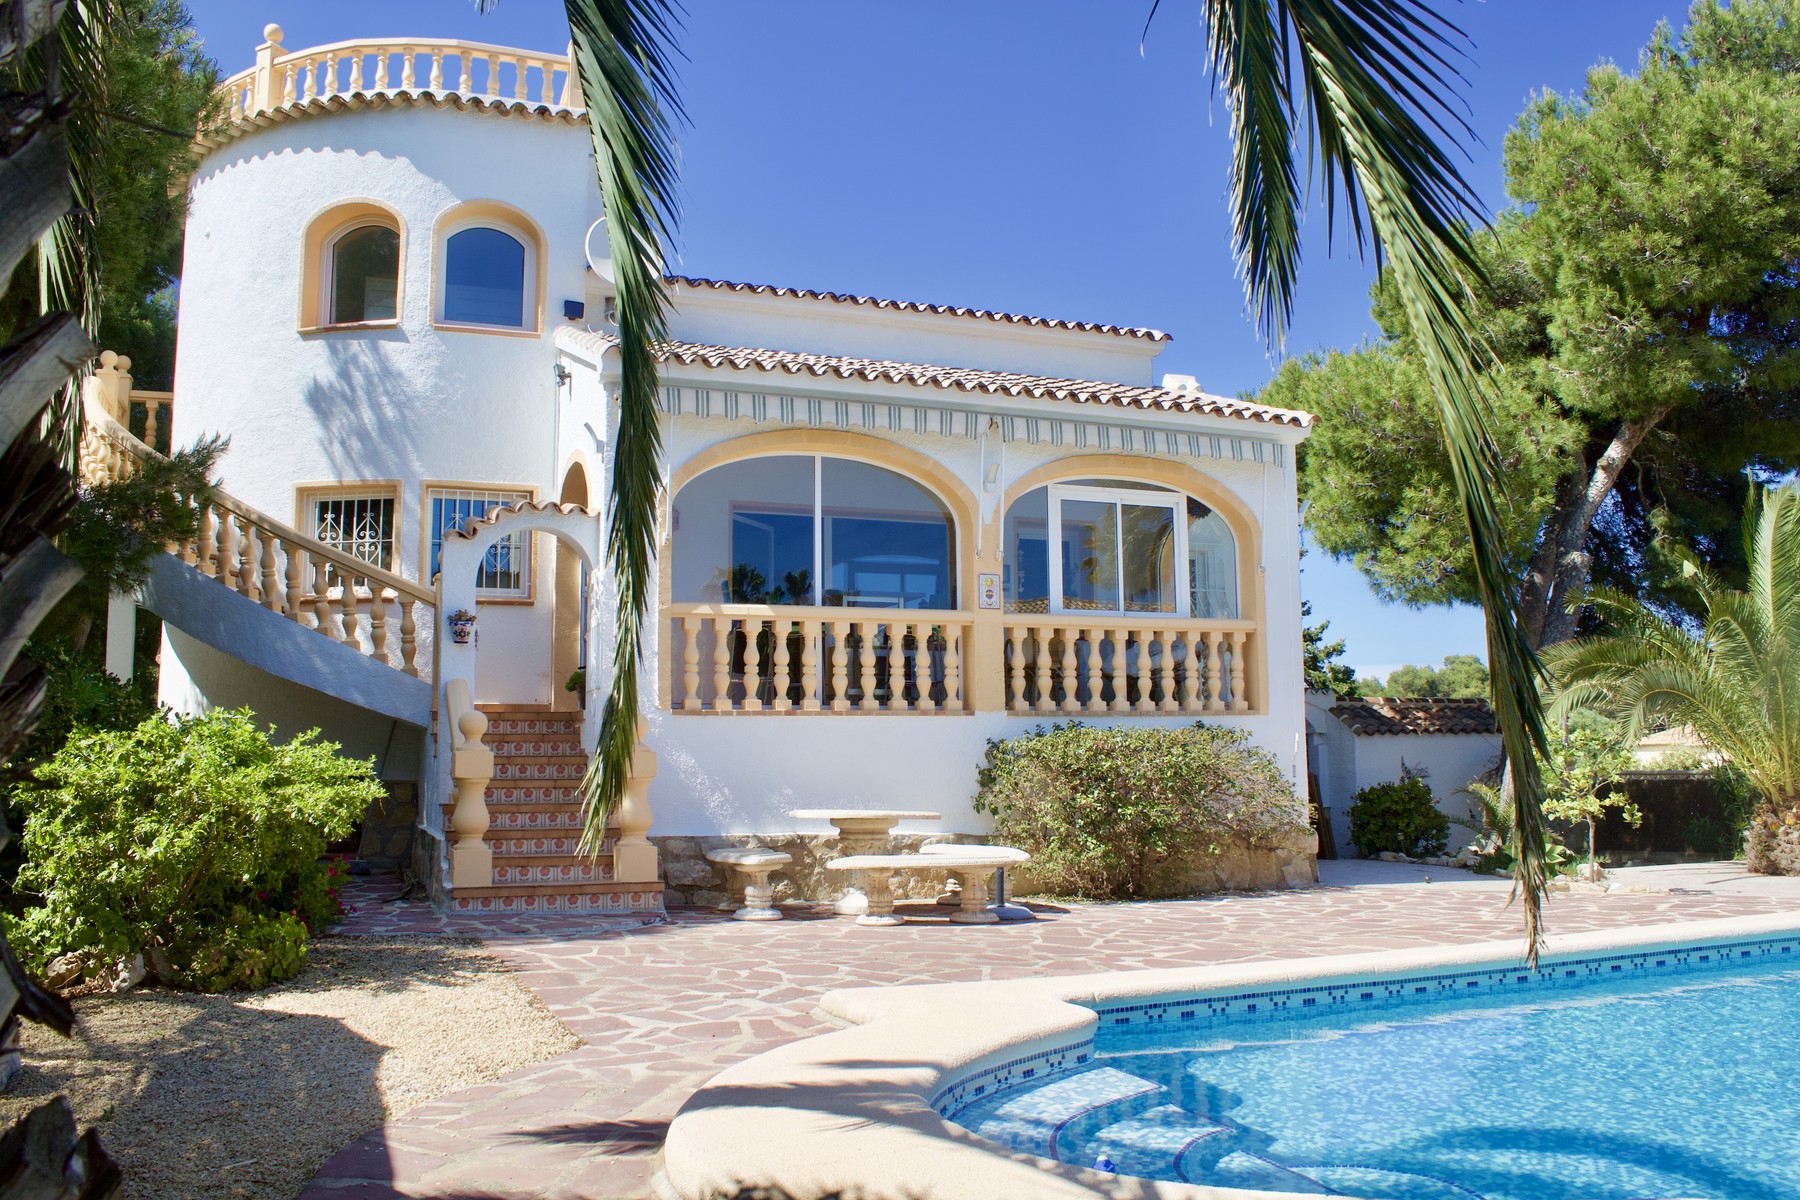 Fantastica Villa en alquiler para 6 personas en Balcon al Mar - Javea